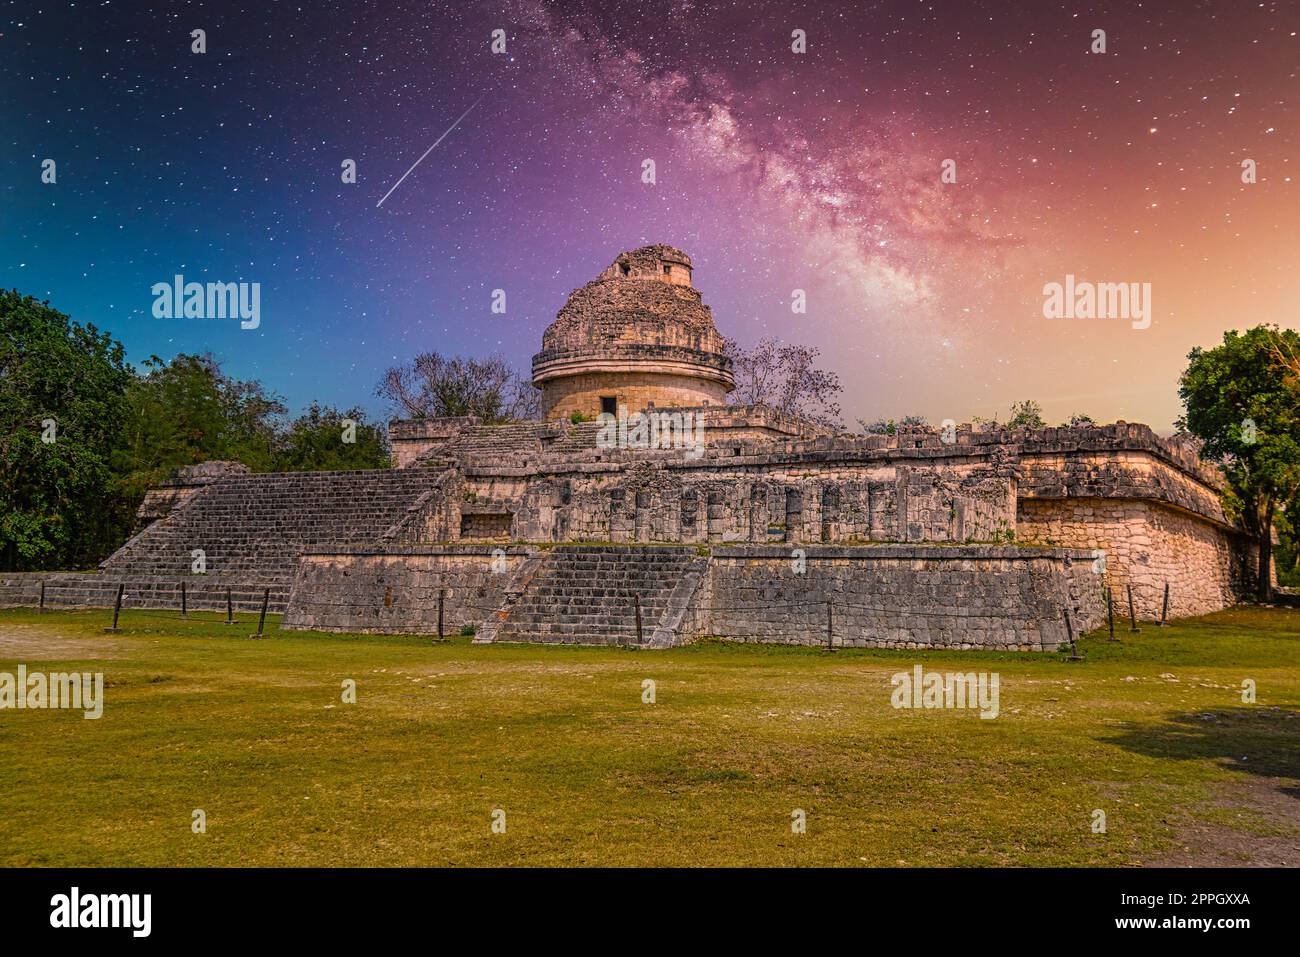 Ruines du temple de l'observatoire El Caracol, Chichen Itza, Yucatan, Mexique, civilisation Maya avec voie lactée ciel nocturne des étoiles de la Galaxie Banque D'Images